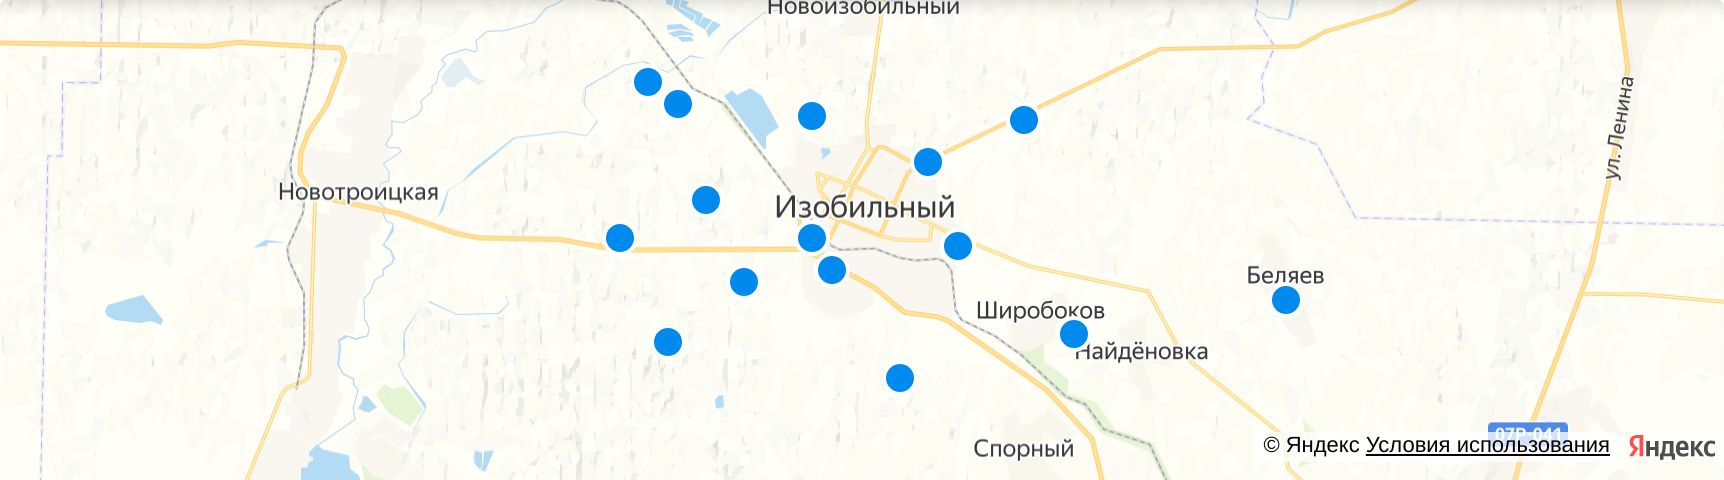 Город Изобильный Ставропольский край на карте. Карта изобильный ставропольский